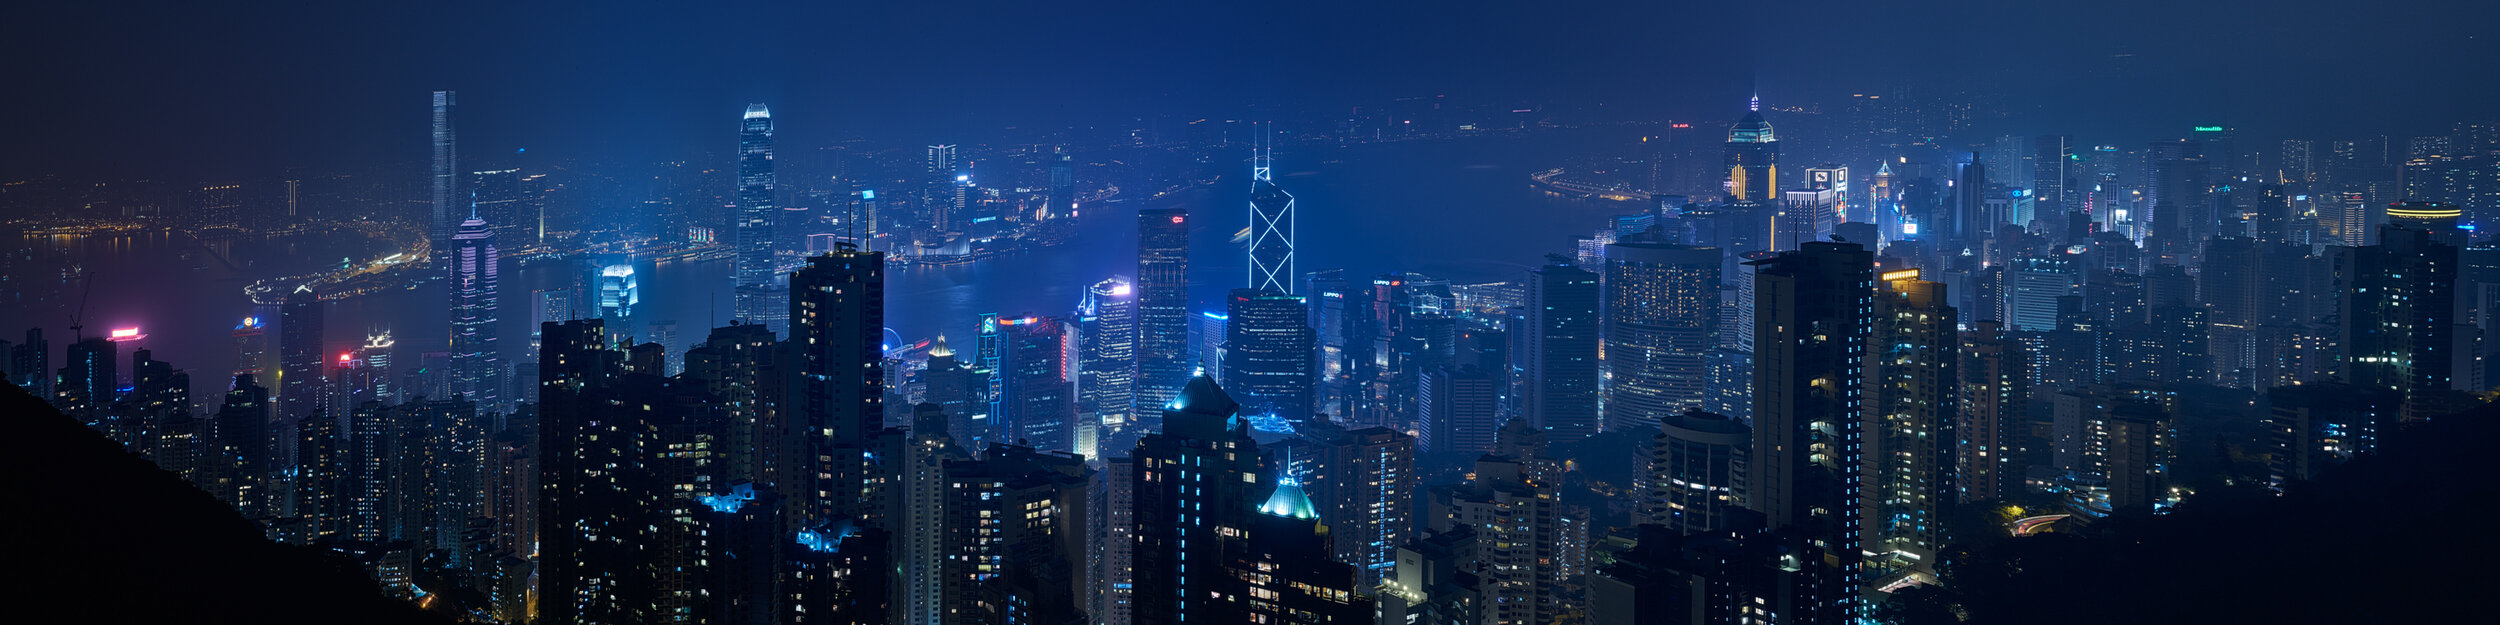 Hongkong Kowloon vom Peak aus fotografiert von Jürg Kaufmann